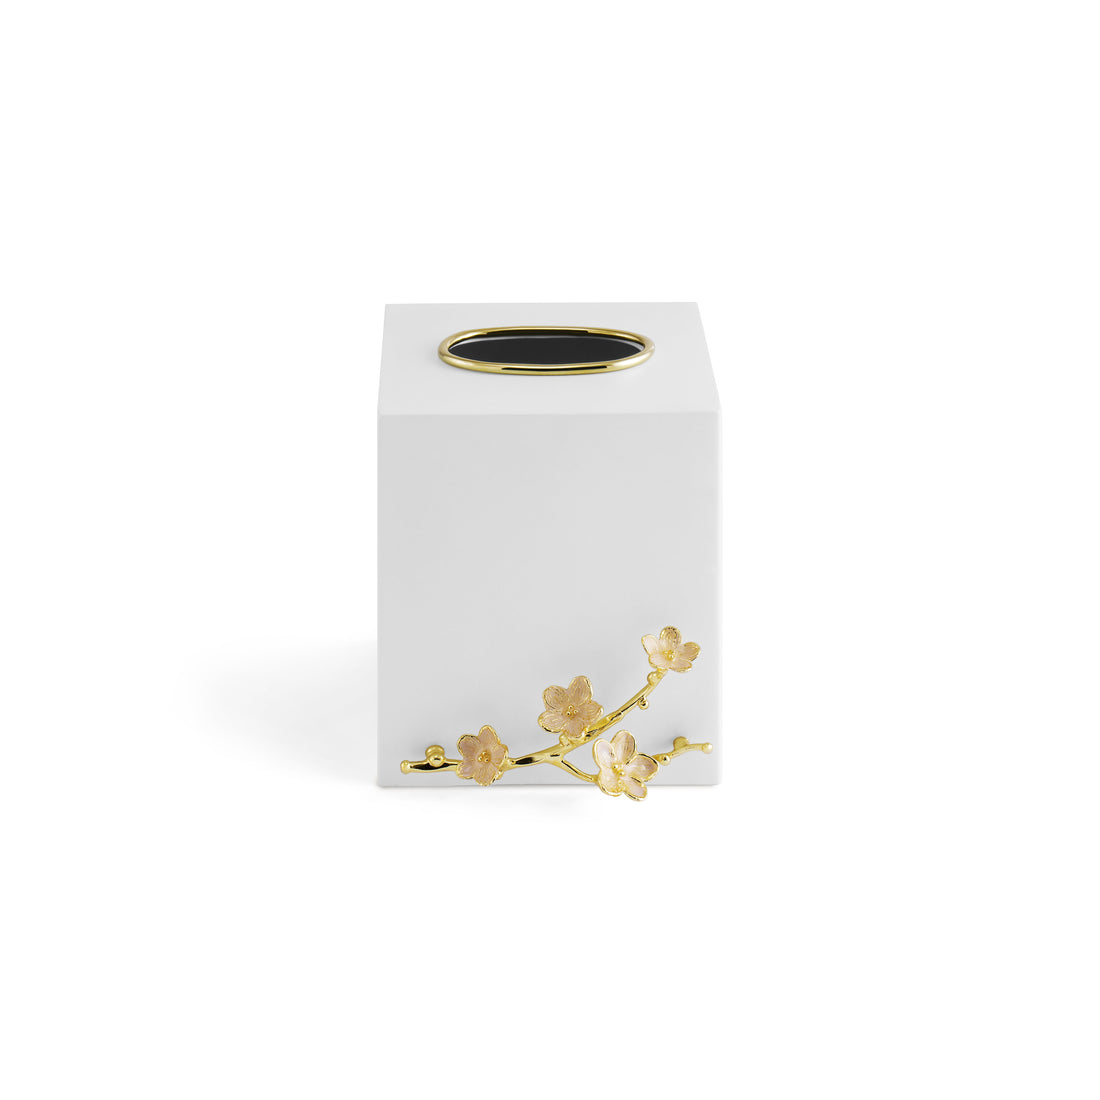 Cherry Blossom Tissue Box Holder